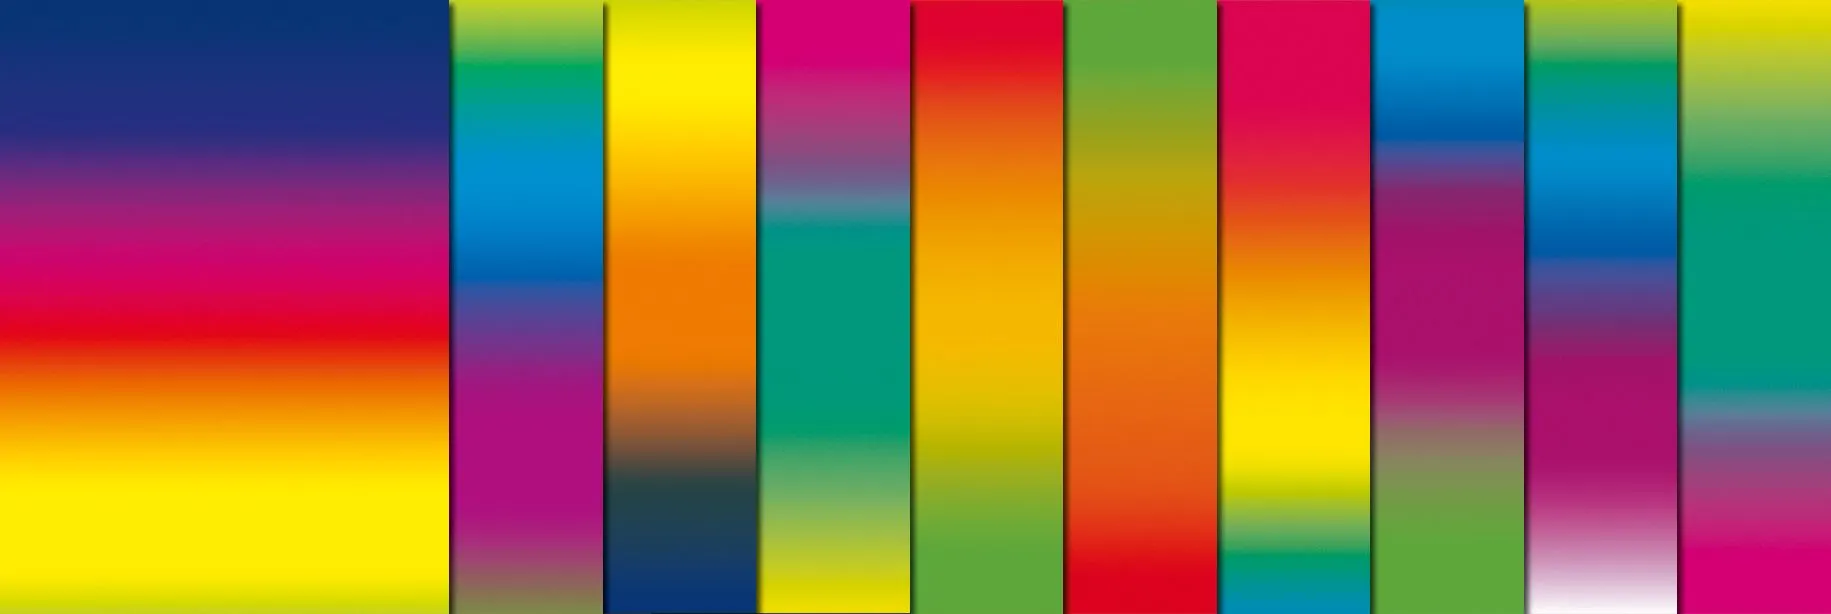 Regenbogen-Tonzeichenpapier, 10 Bögen